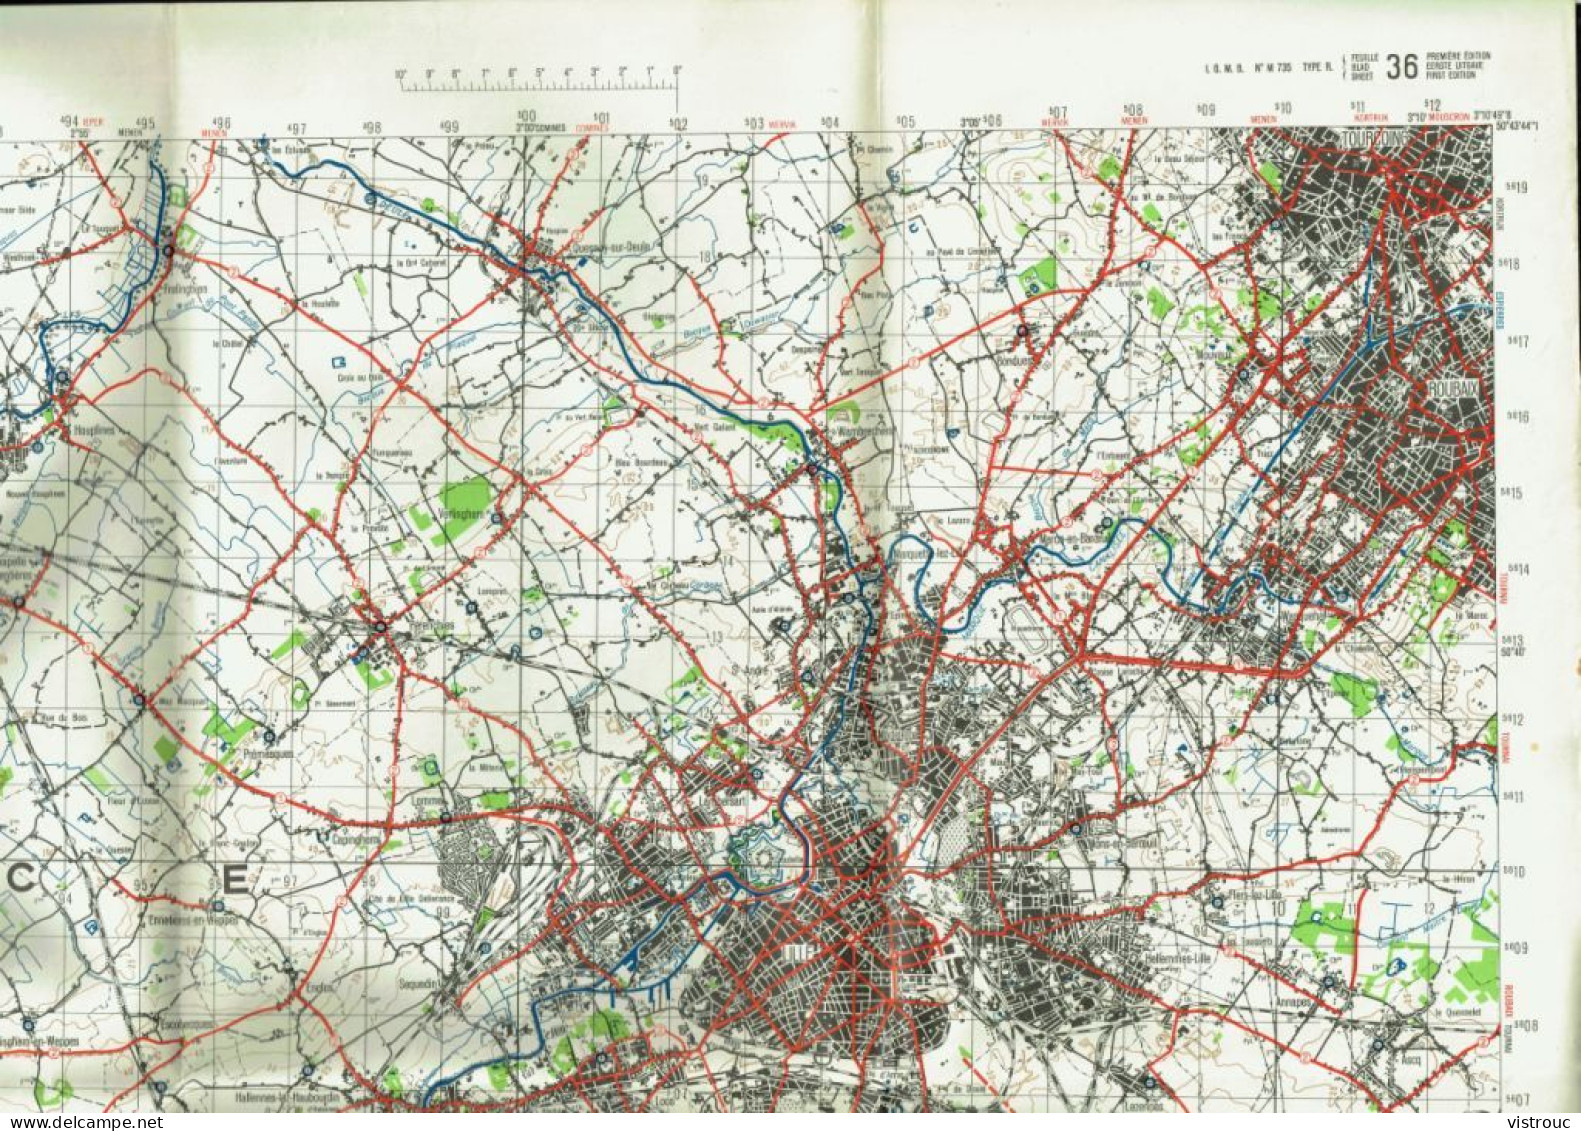 Institut Géographique Militaire Be - "PLOEGSTEERT" - N° 36 - Edition: 1954 - Echelle 1/50.000 - Cartes Topographiques